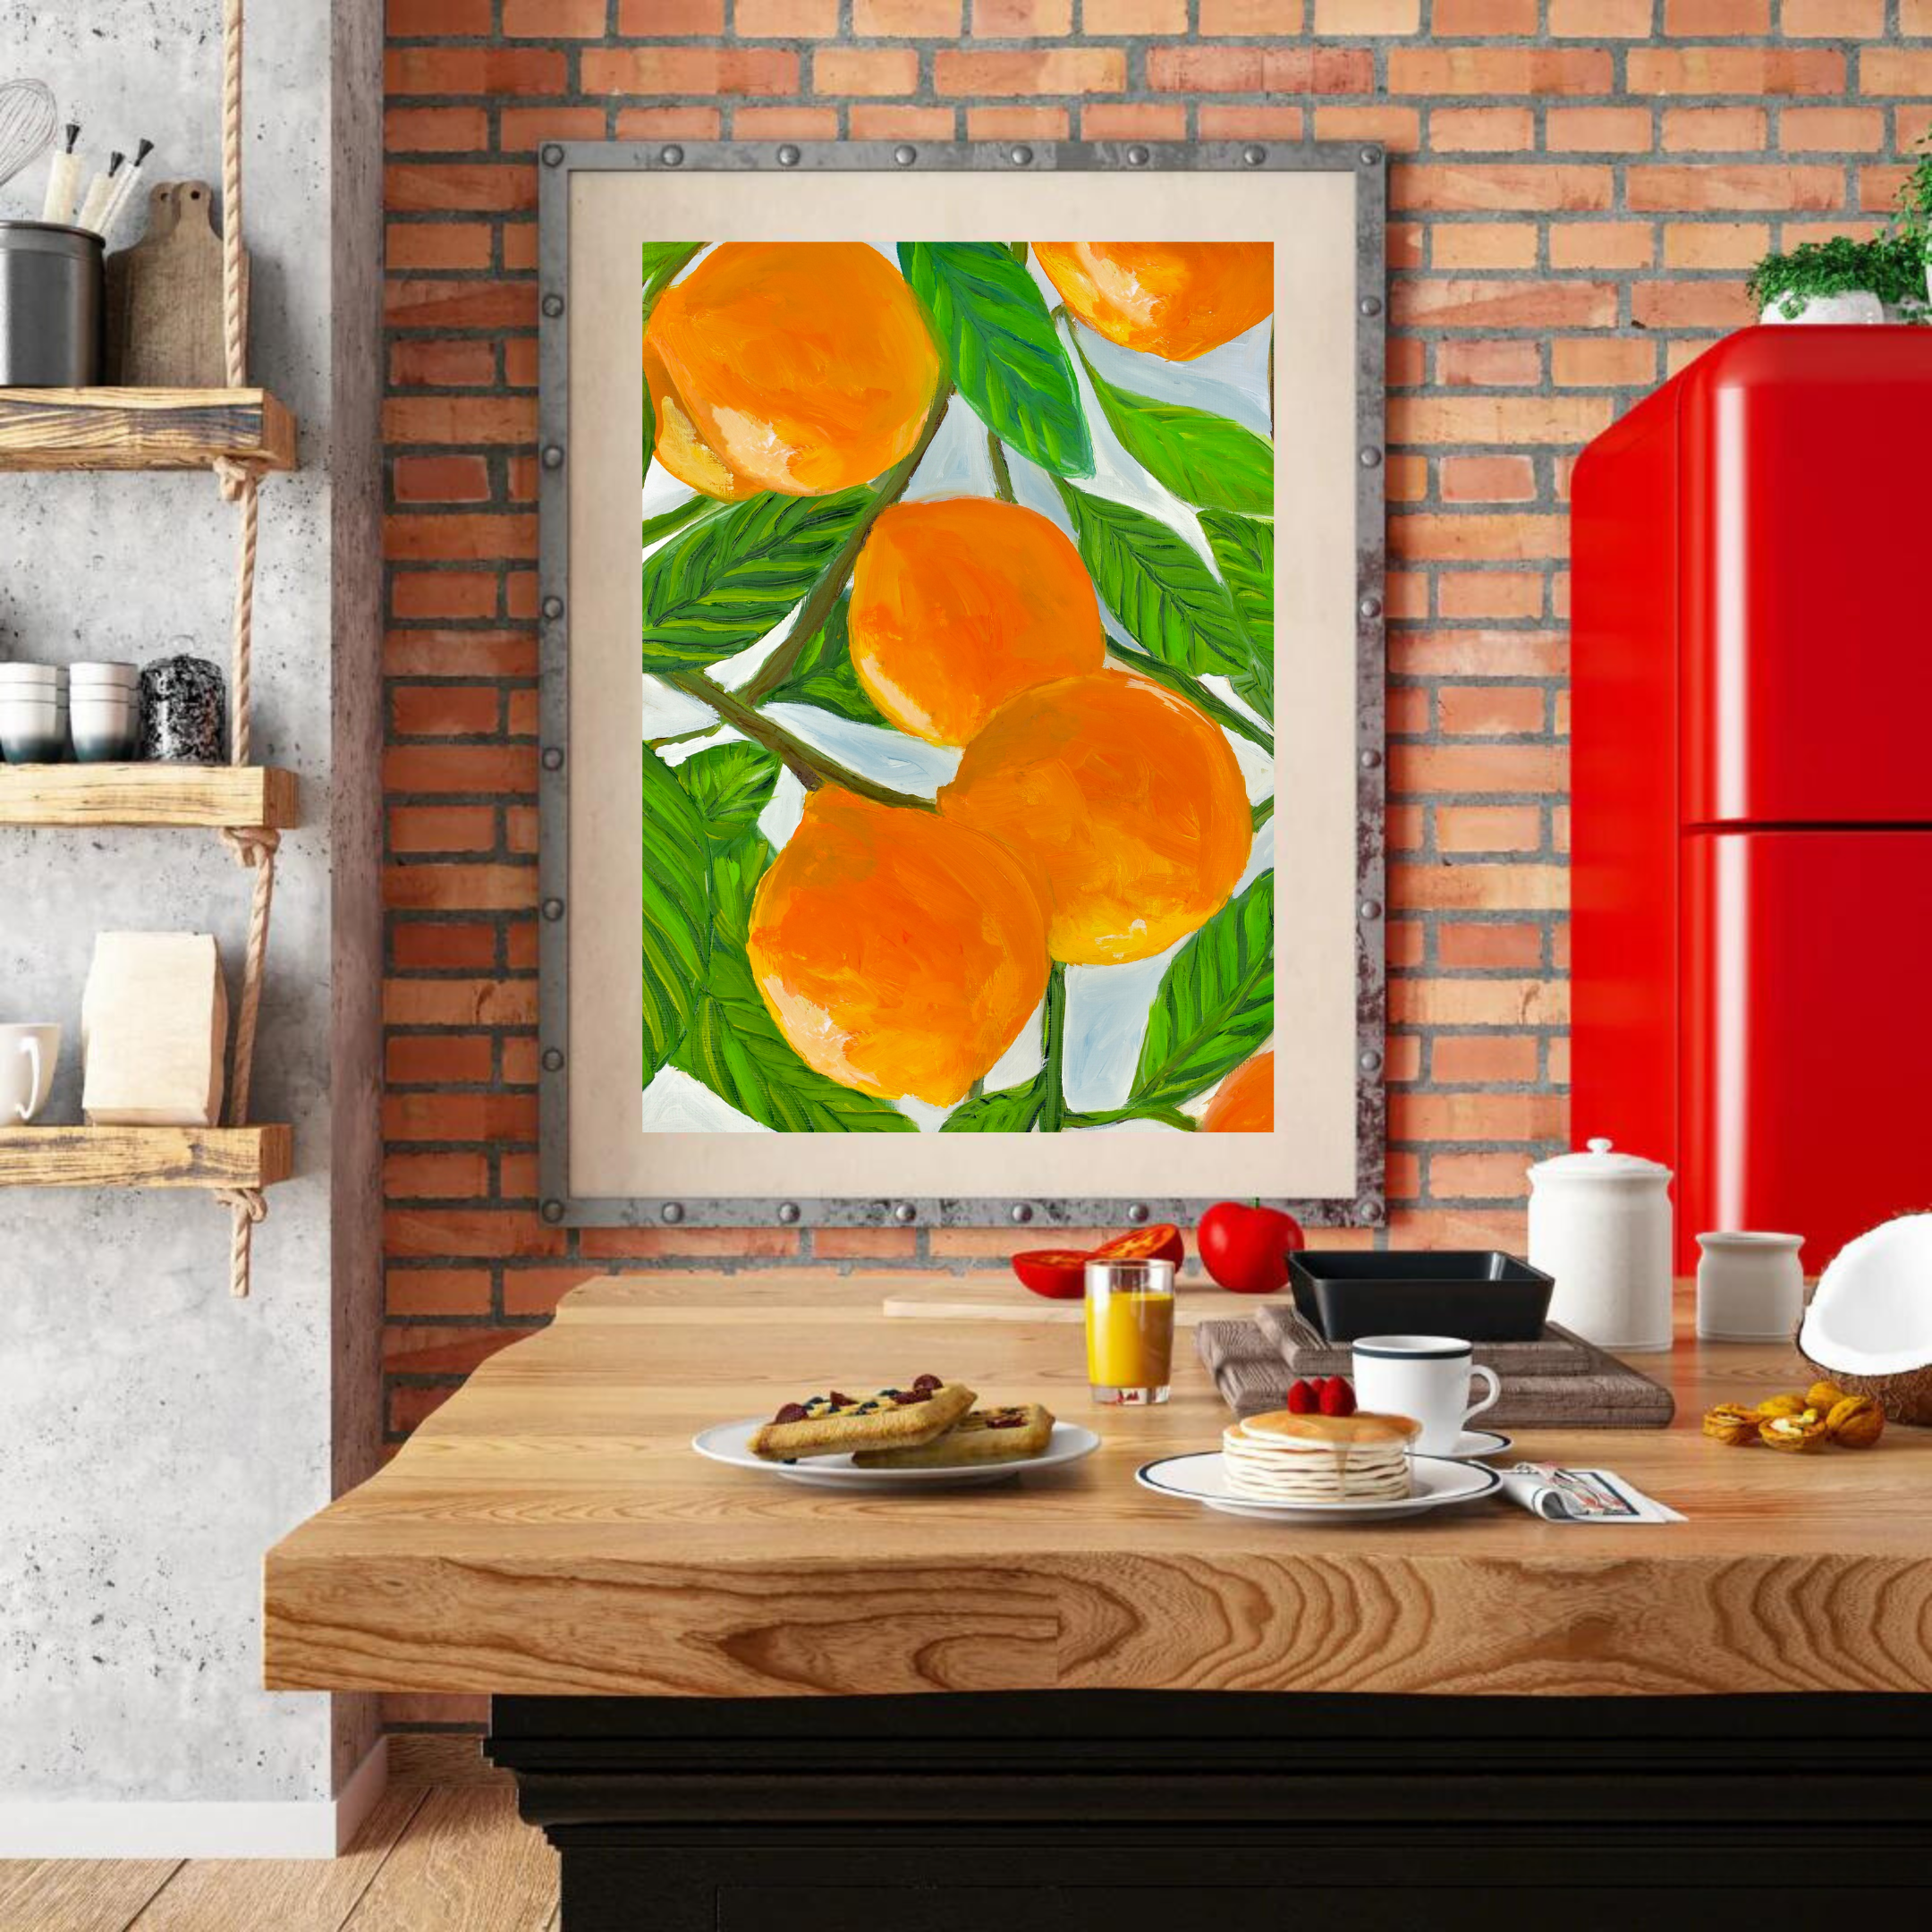 Oranges art print